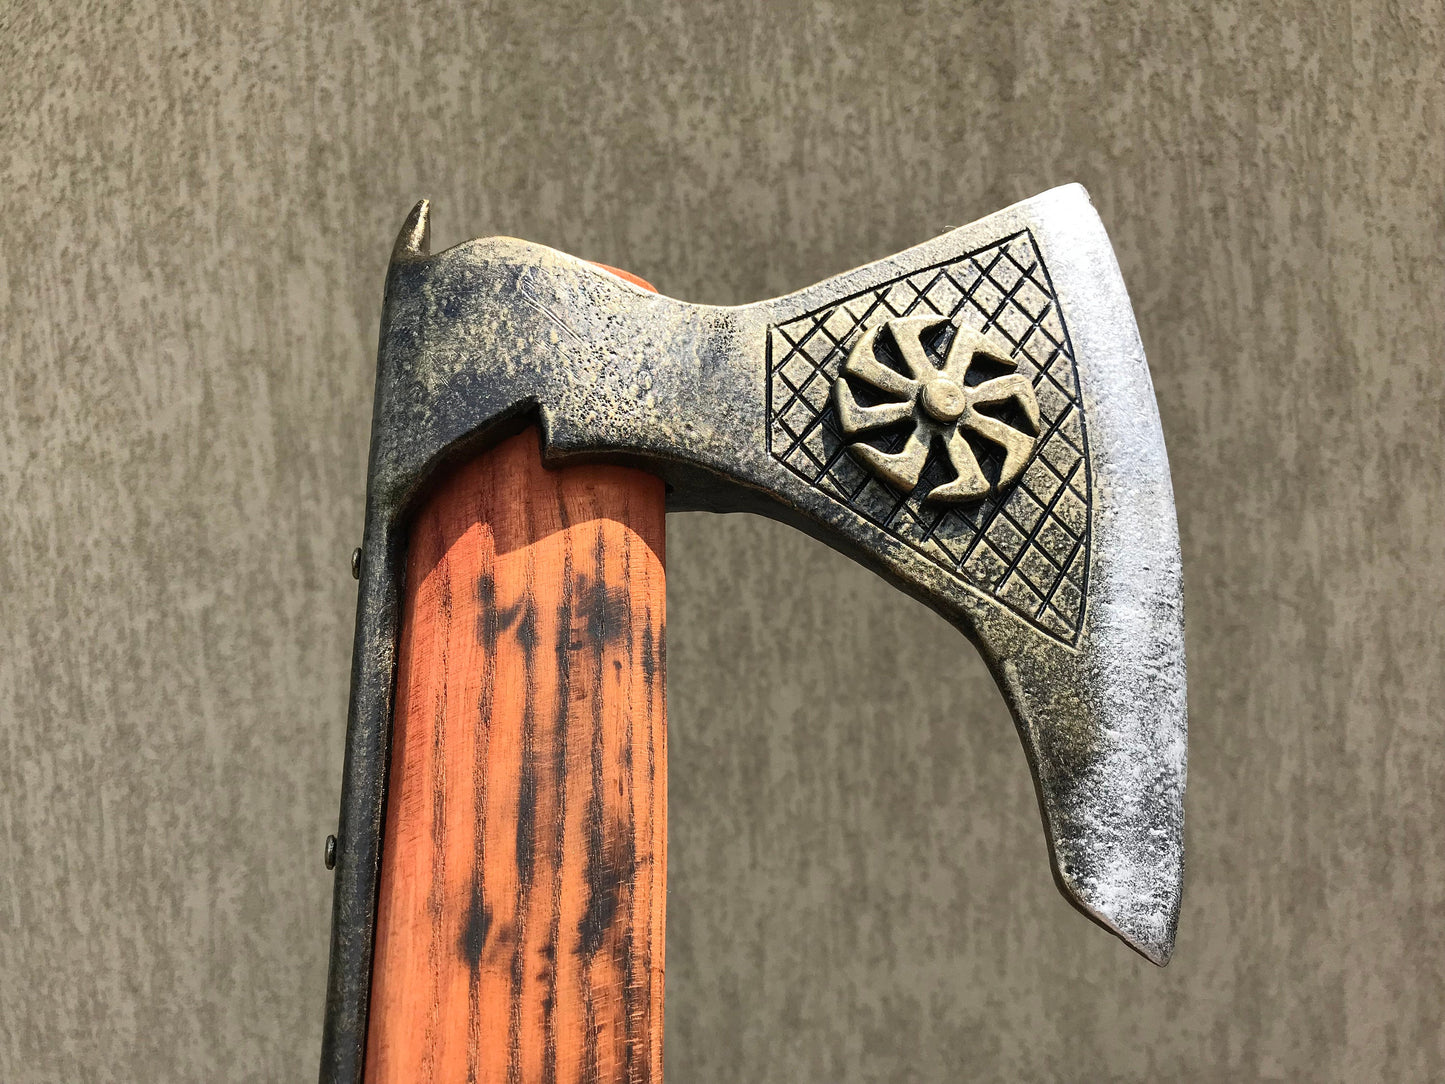 Viking axe, viking spear, viking weapon, medieval decor, viking battle axe, viking wall decor, viking shield, viking sword, viking artifact